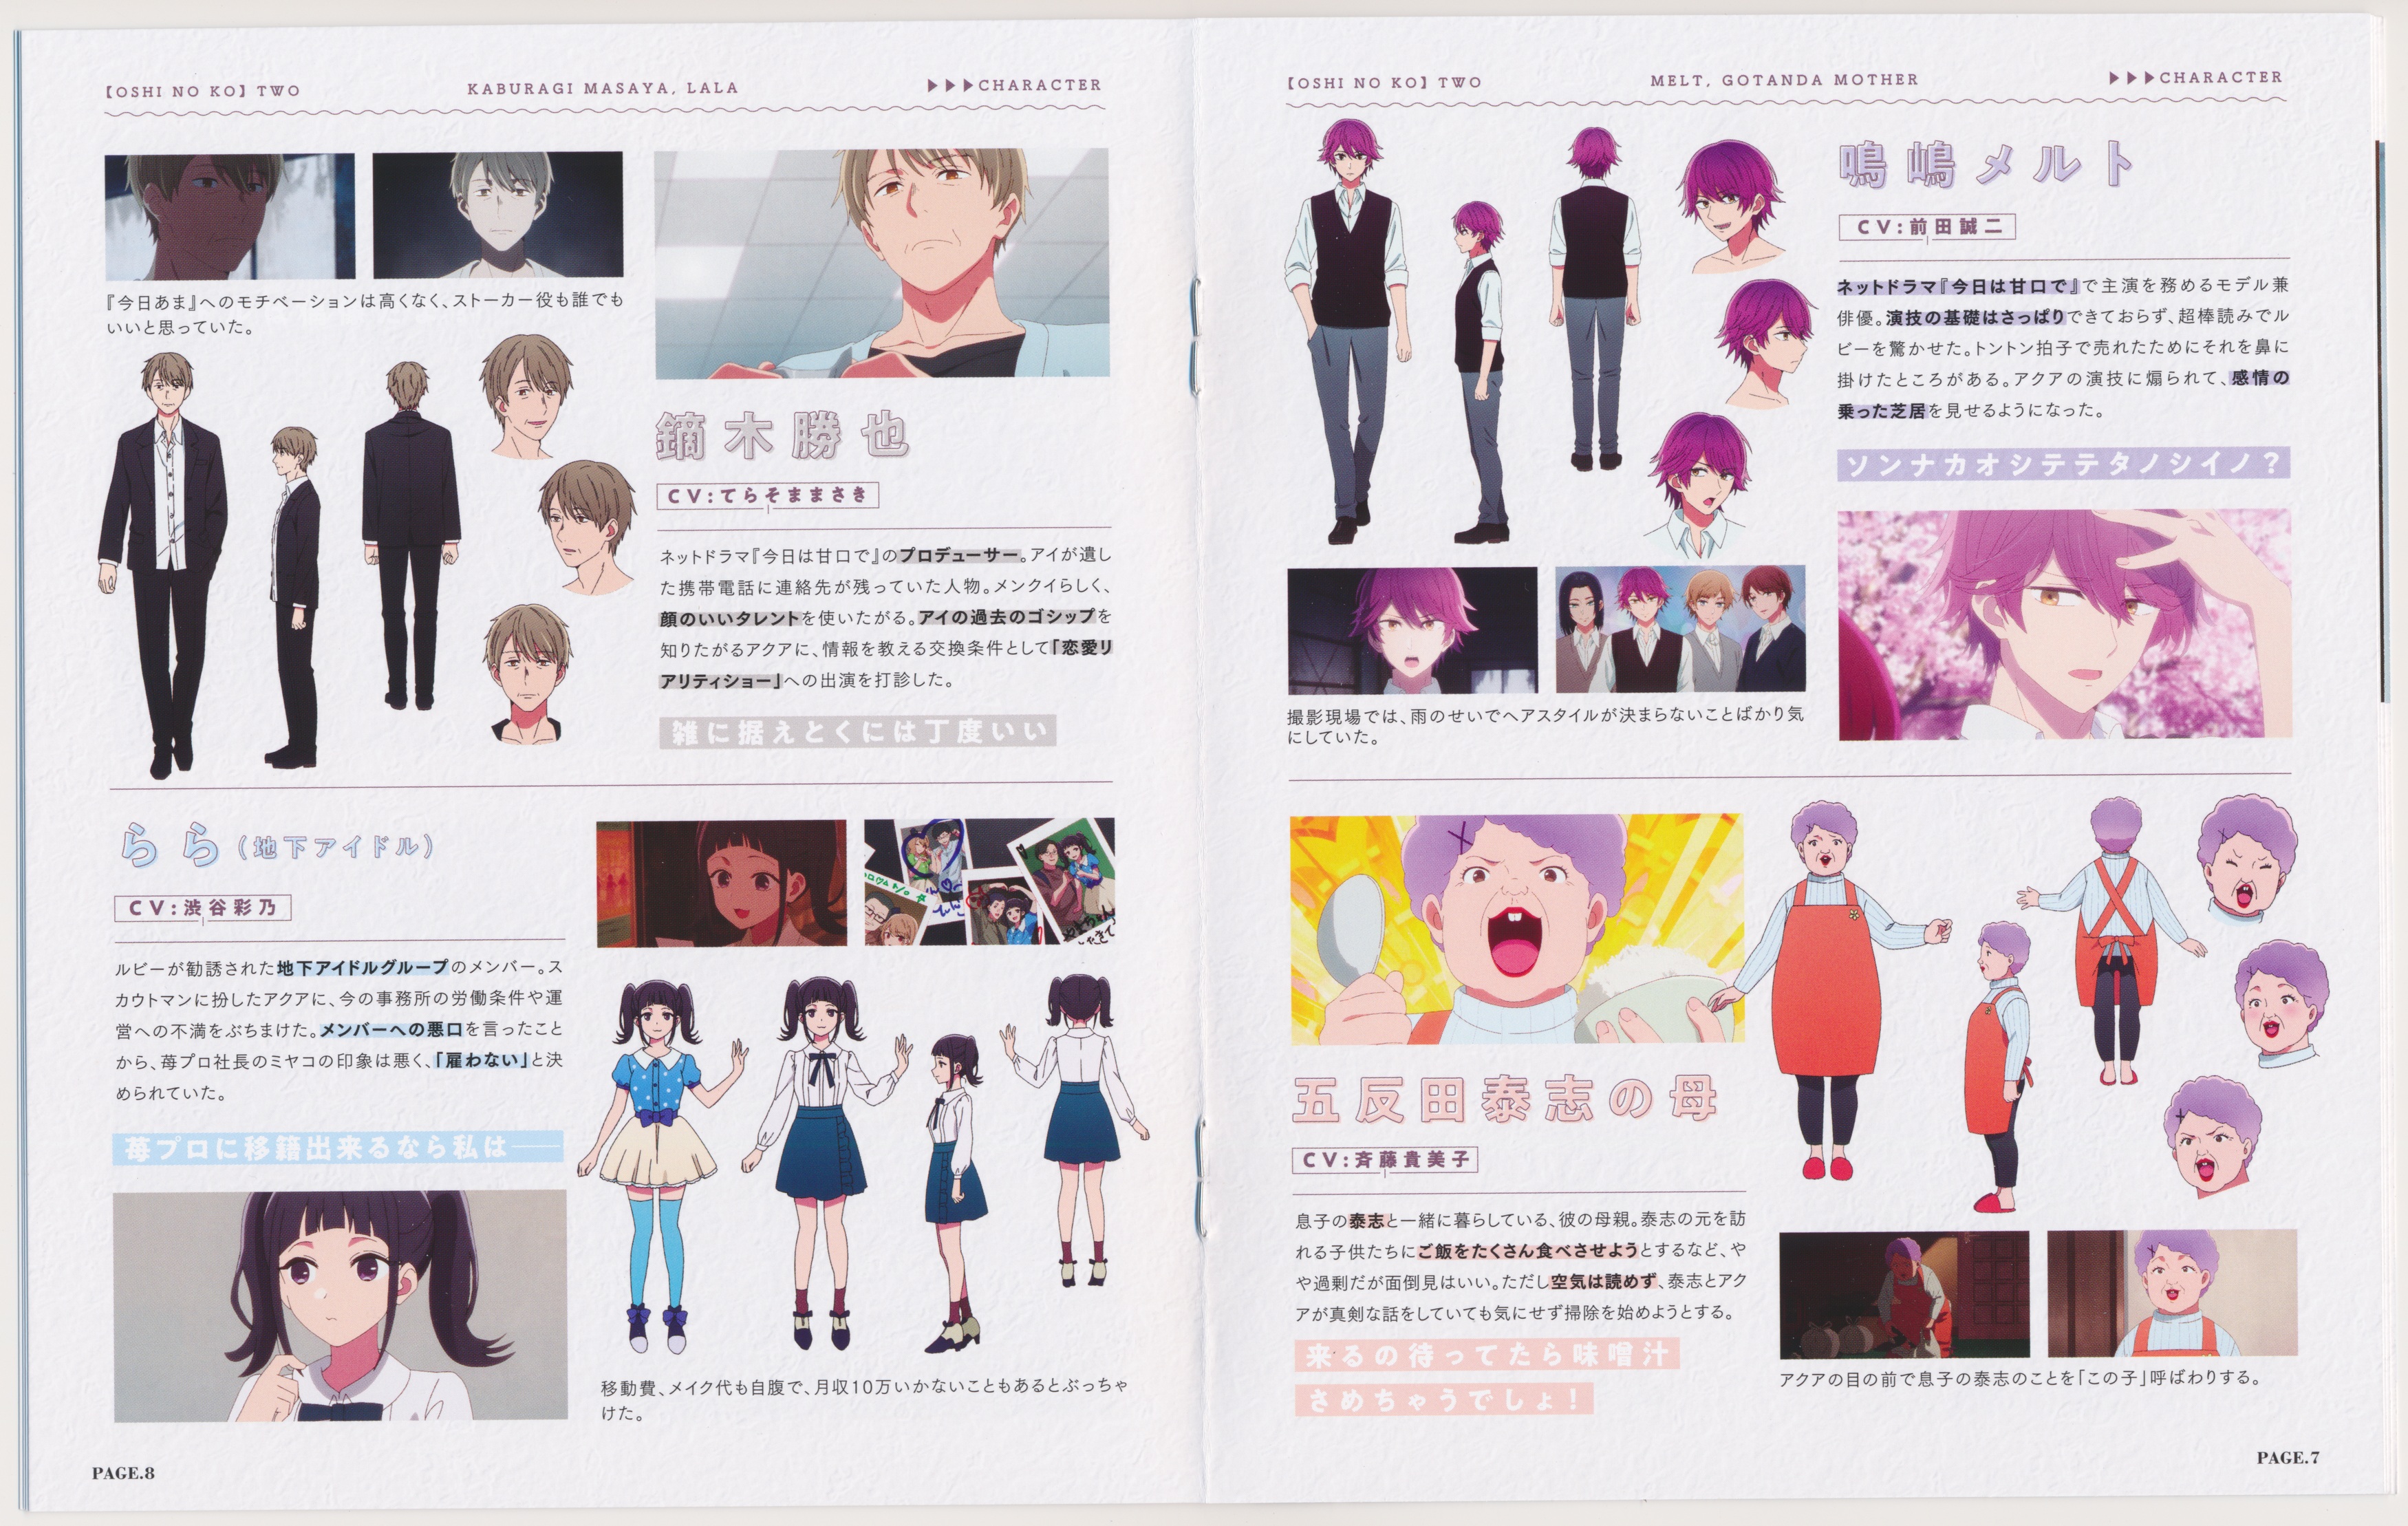 OSHI NO KO Character Designer Kanna Hirayama Shares Creative